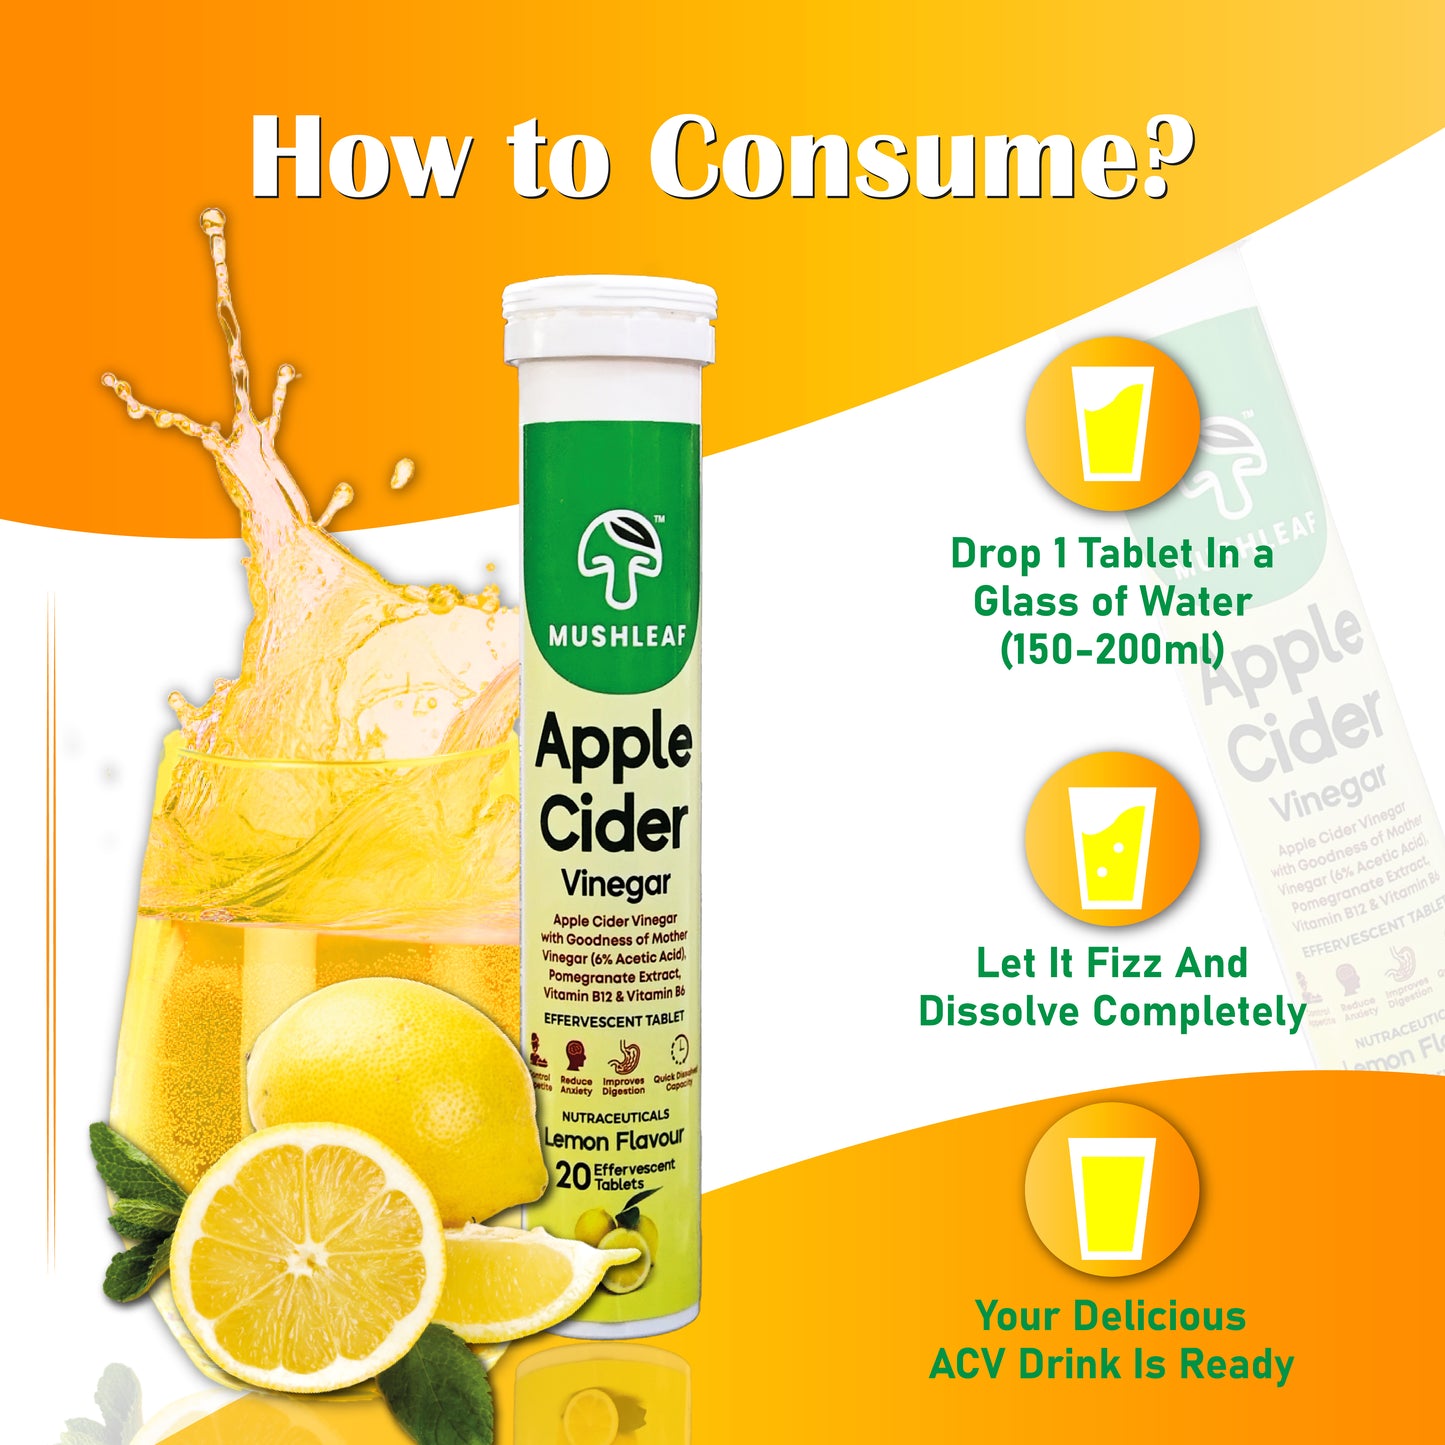 Apple Cider Fat Cutter - Lemon Flavour